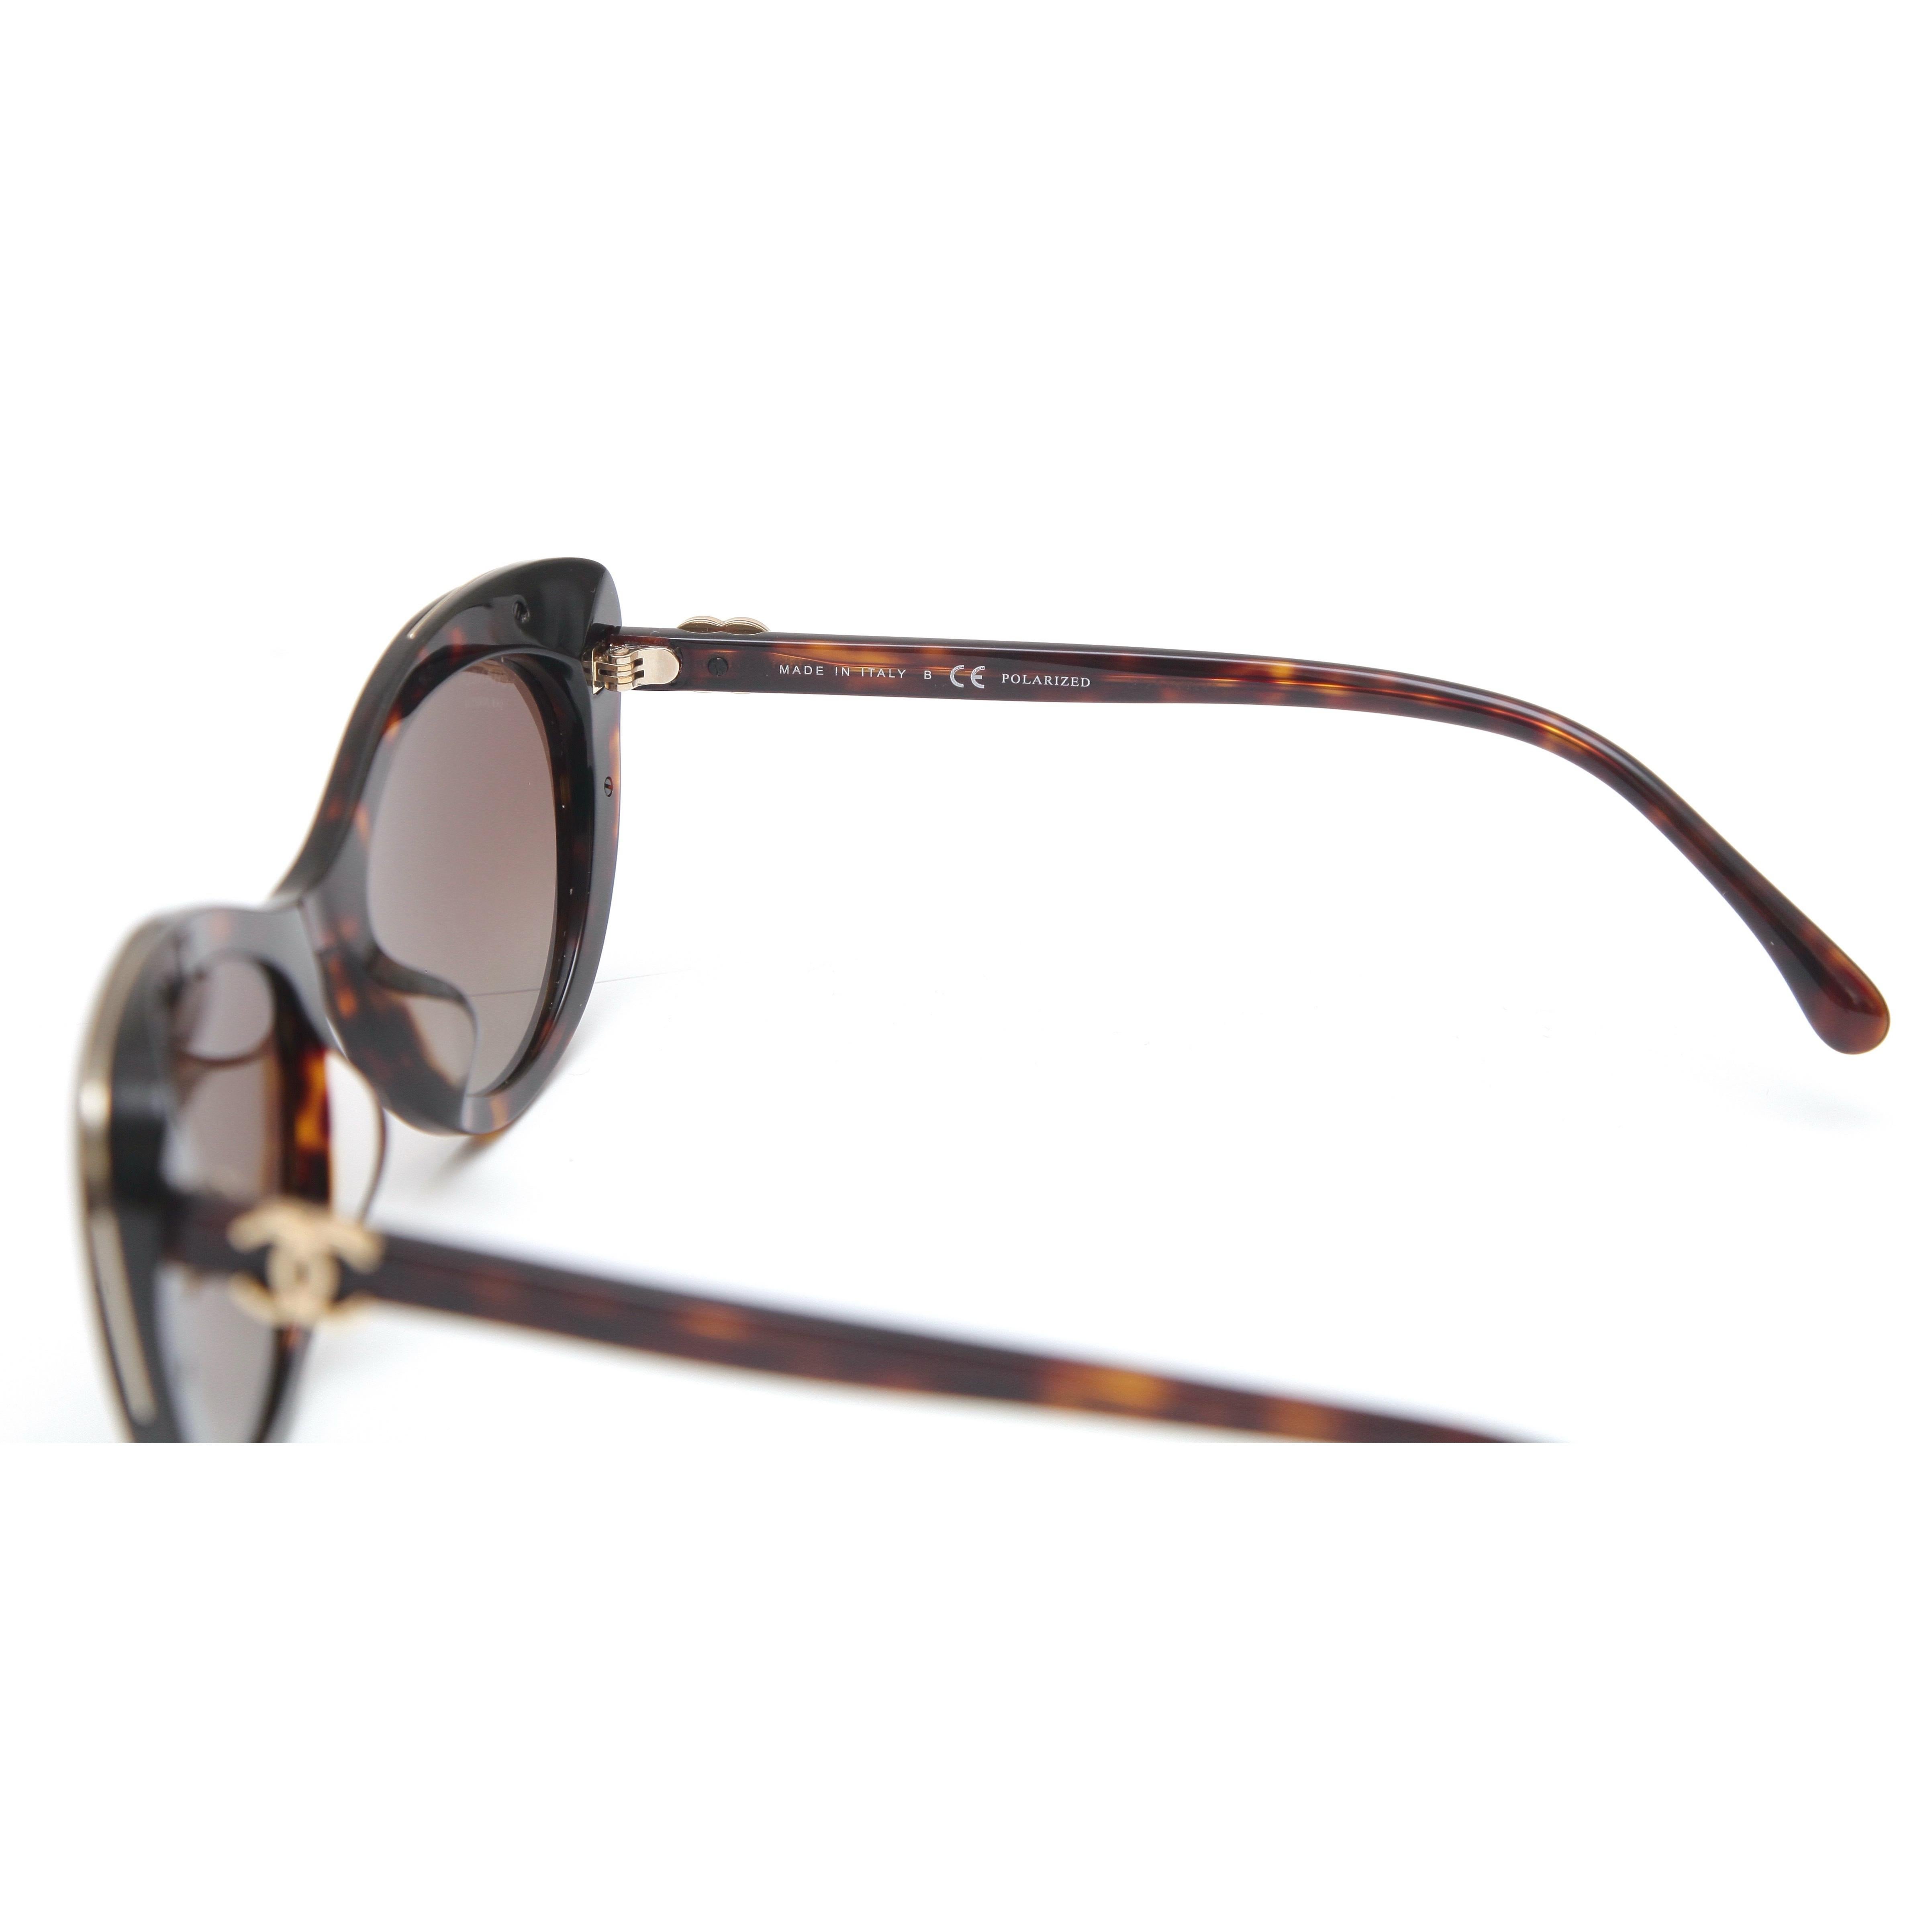 Gray CHANEL Sunglasses Eyeglasses 5432-A 714/S9 Cat Eye Tortoise Frame Polarized Lens